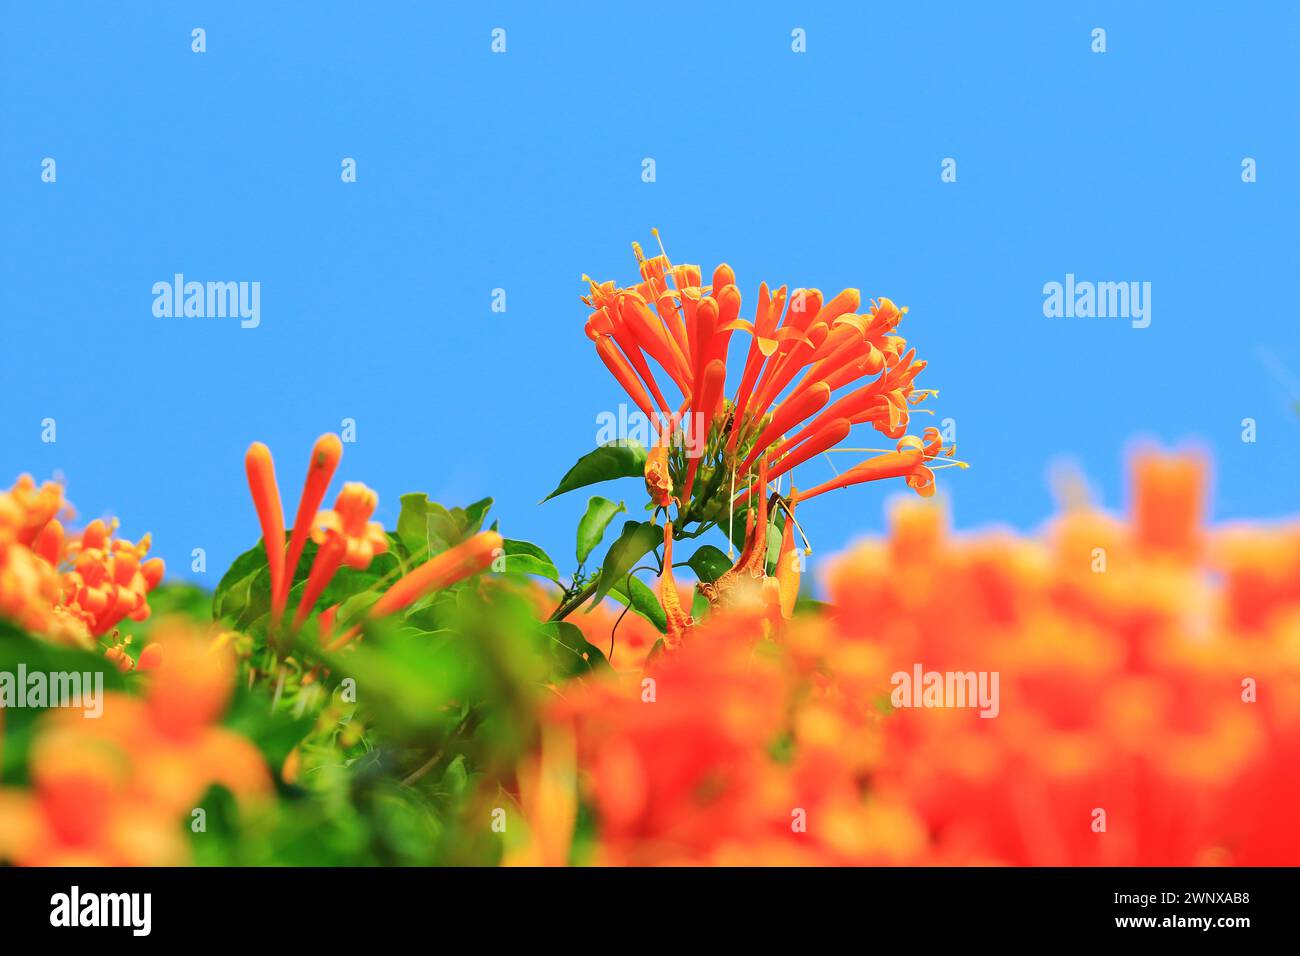 Flambant trompette ou feu-cracker Vine ou Orange-trompette fleurs de vigne fleurissant dans le jardin avec fond de ciel bleu Banque D'Images